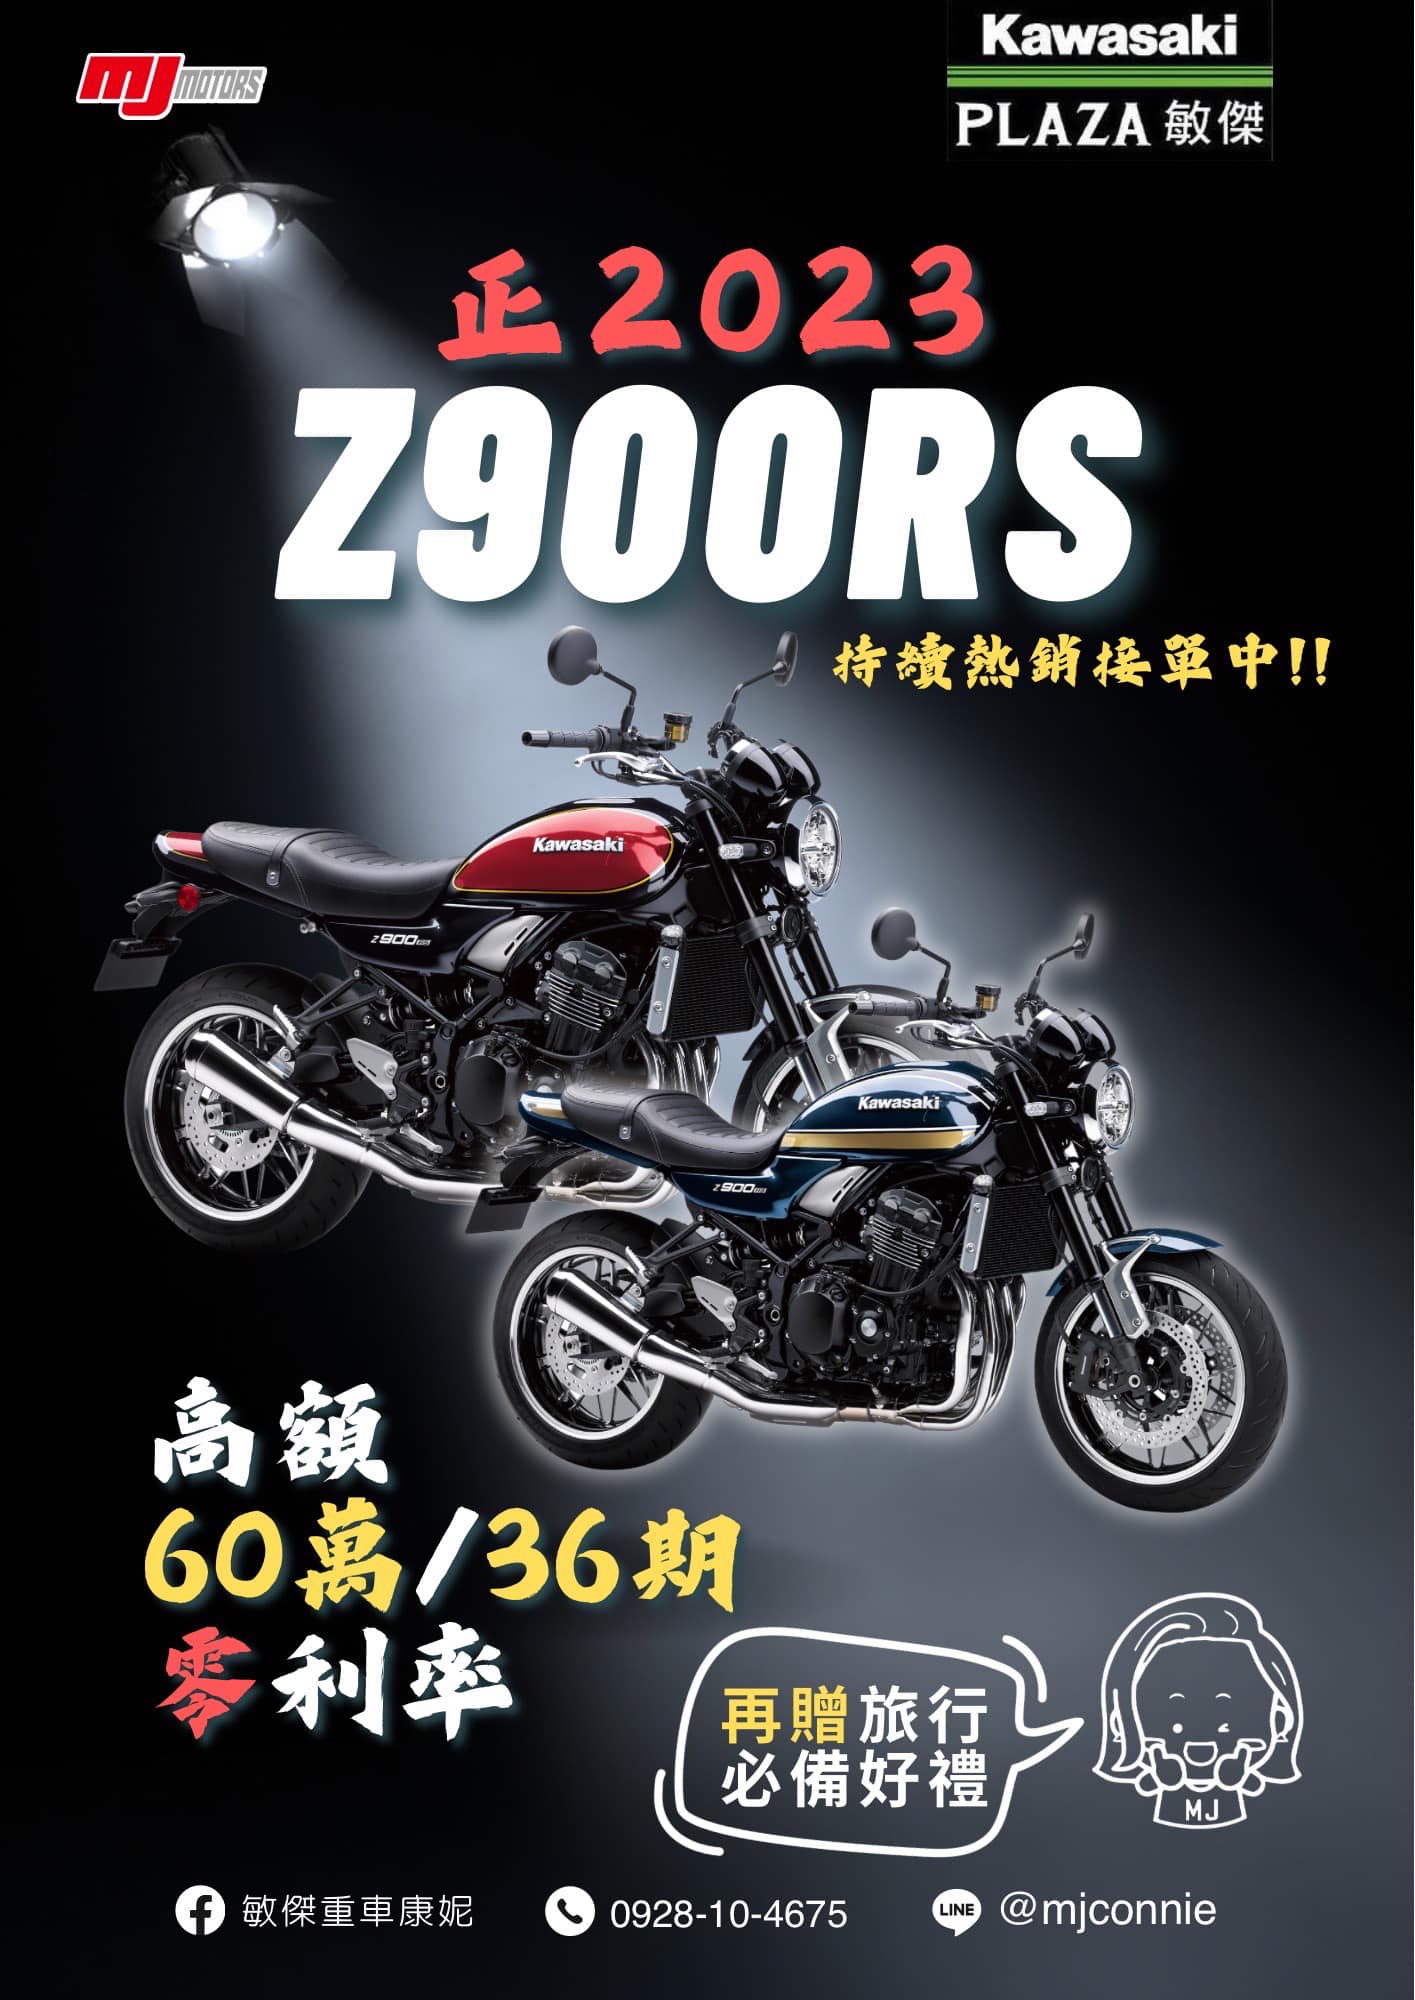 KAWASAKI Z900RS新車出售中 『敏傑康妮』Kawasaki Z900RS 正2023 年份 高額60萬36期零利率 吉祥月送旅行套組 | 敏傑車業資深銷售專員 康妮 Connie